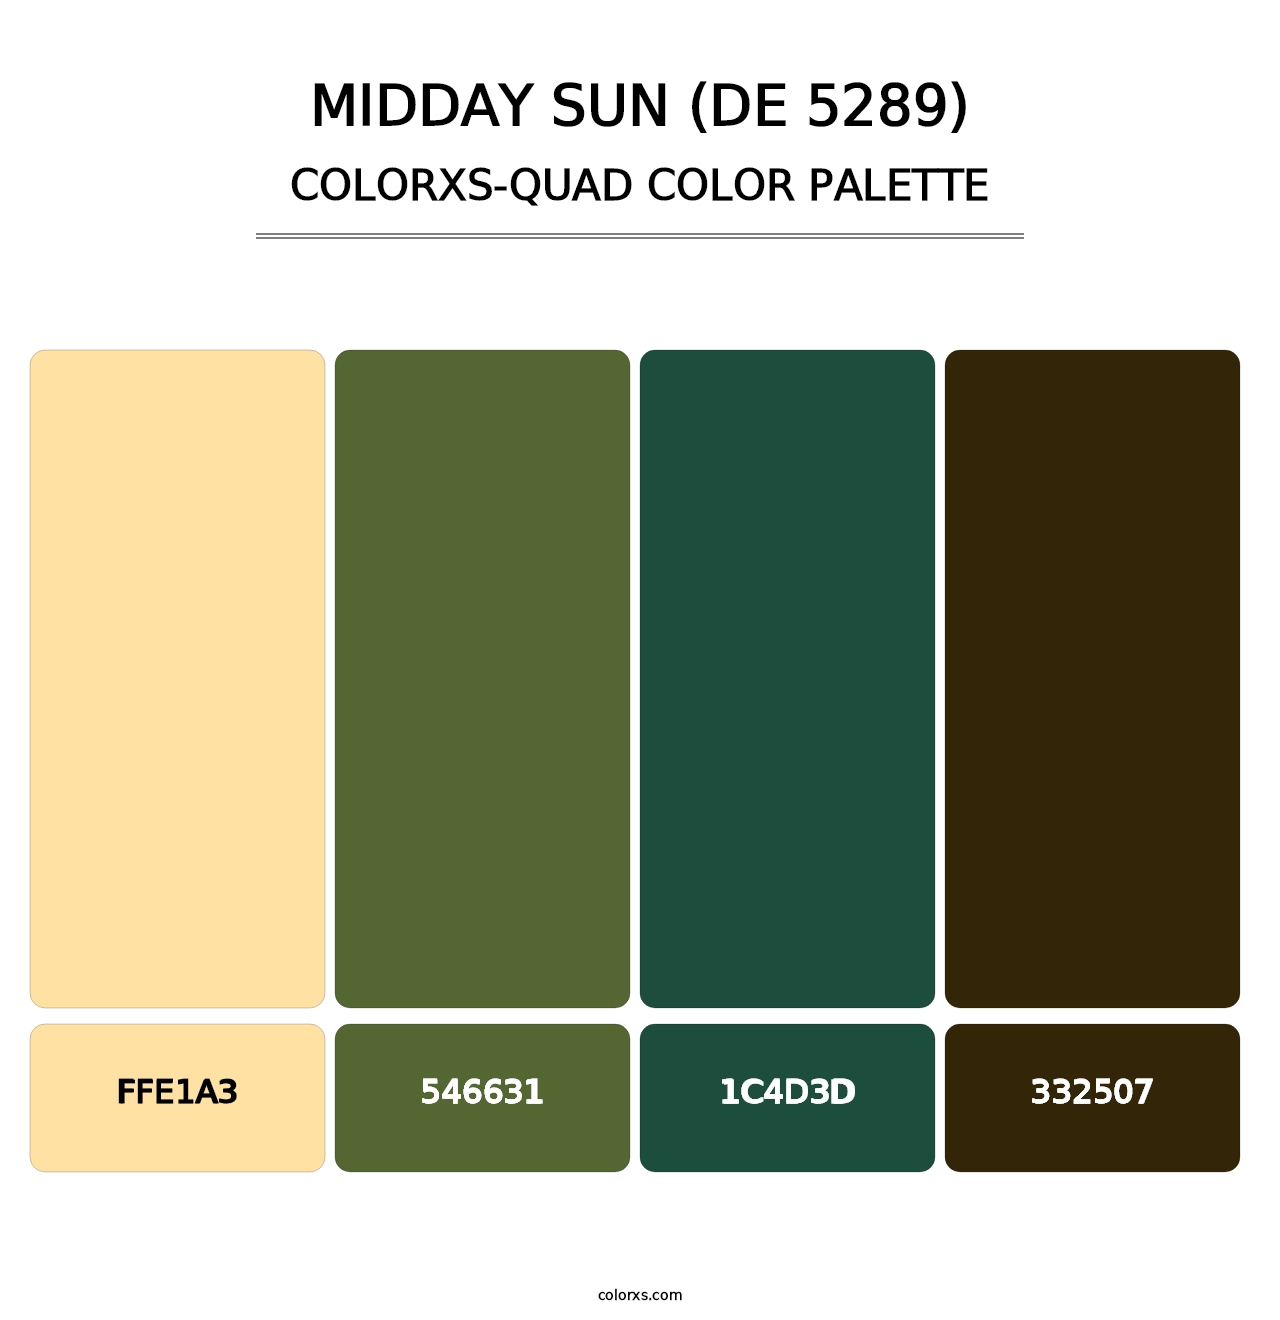 Midday Sun (DE 5289) - Colorxs Quad Palette